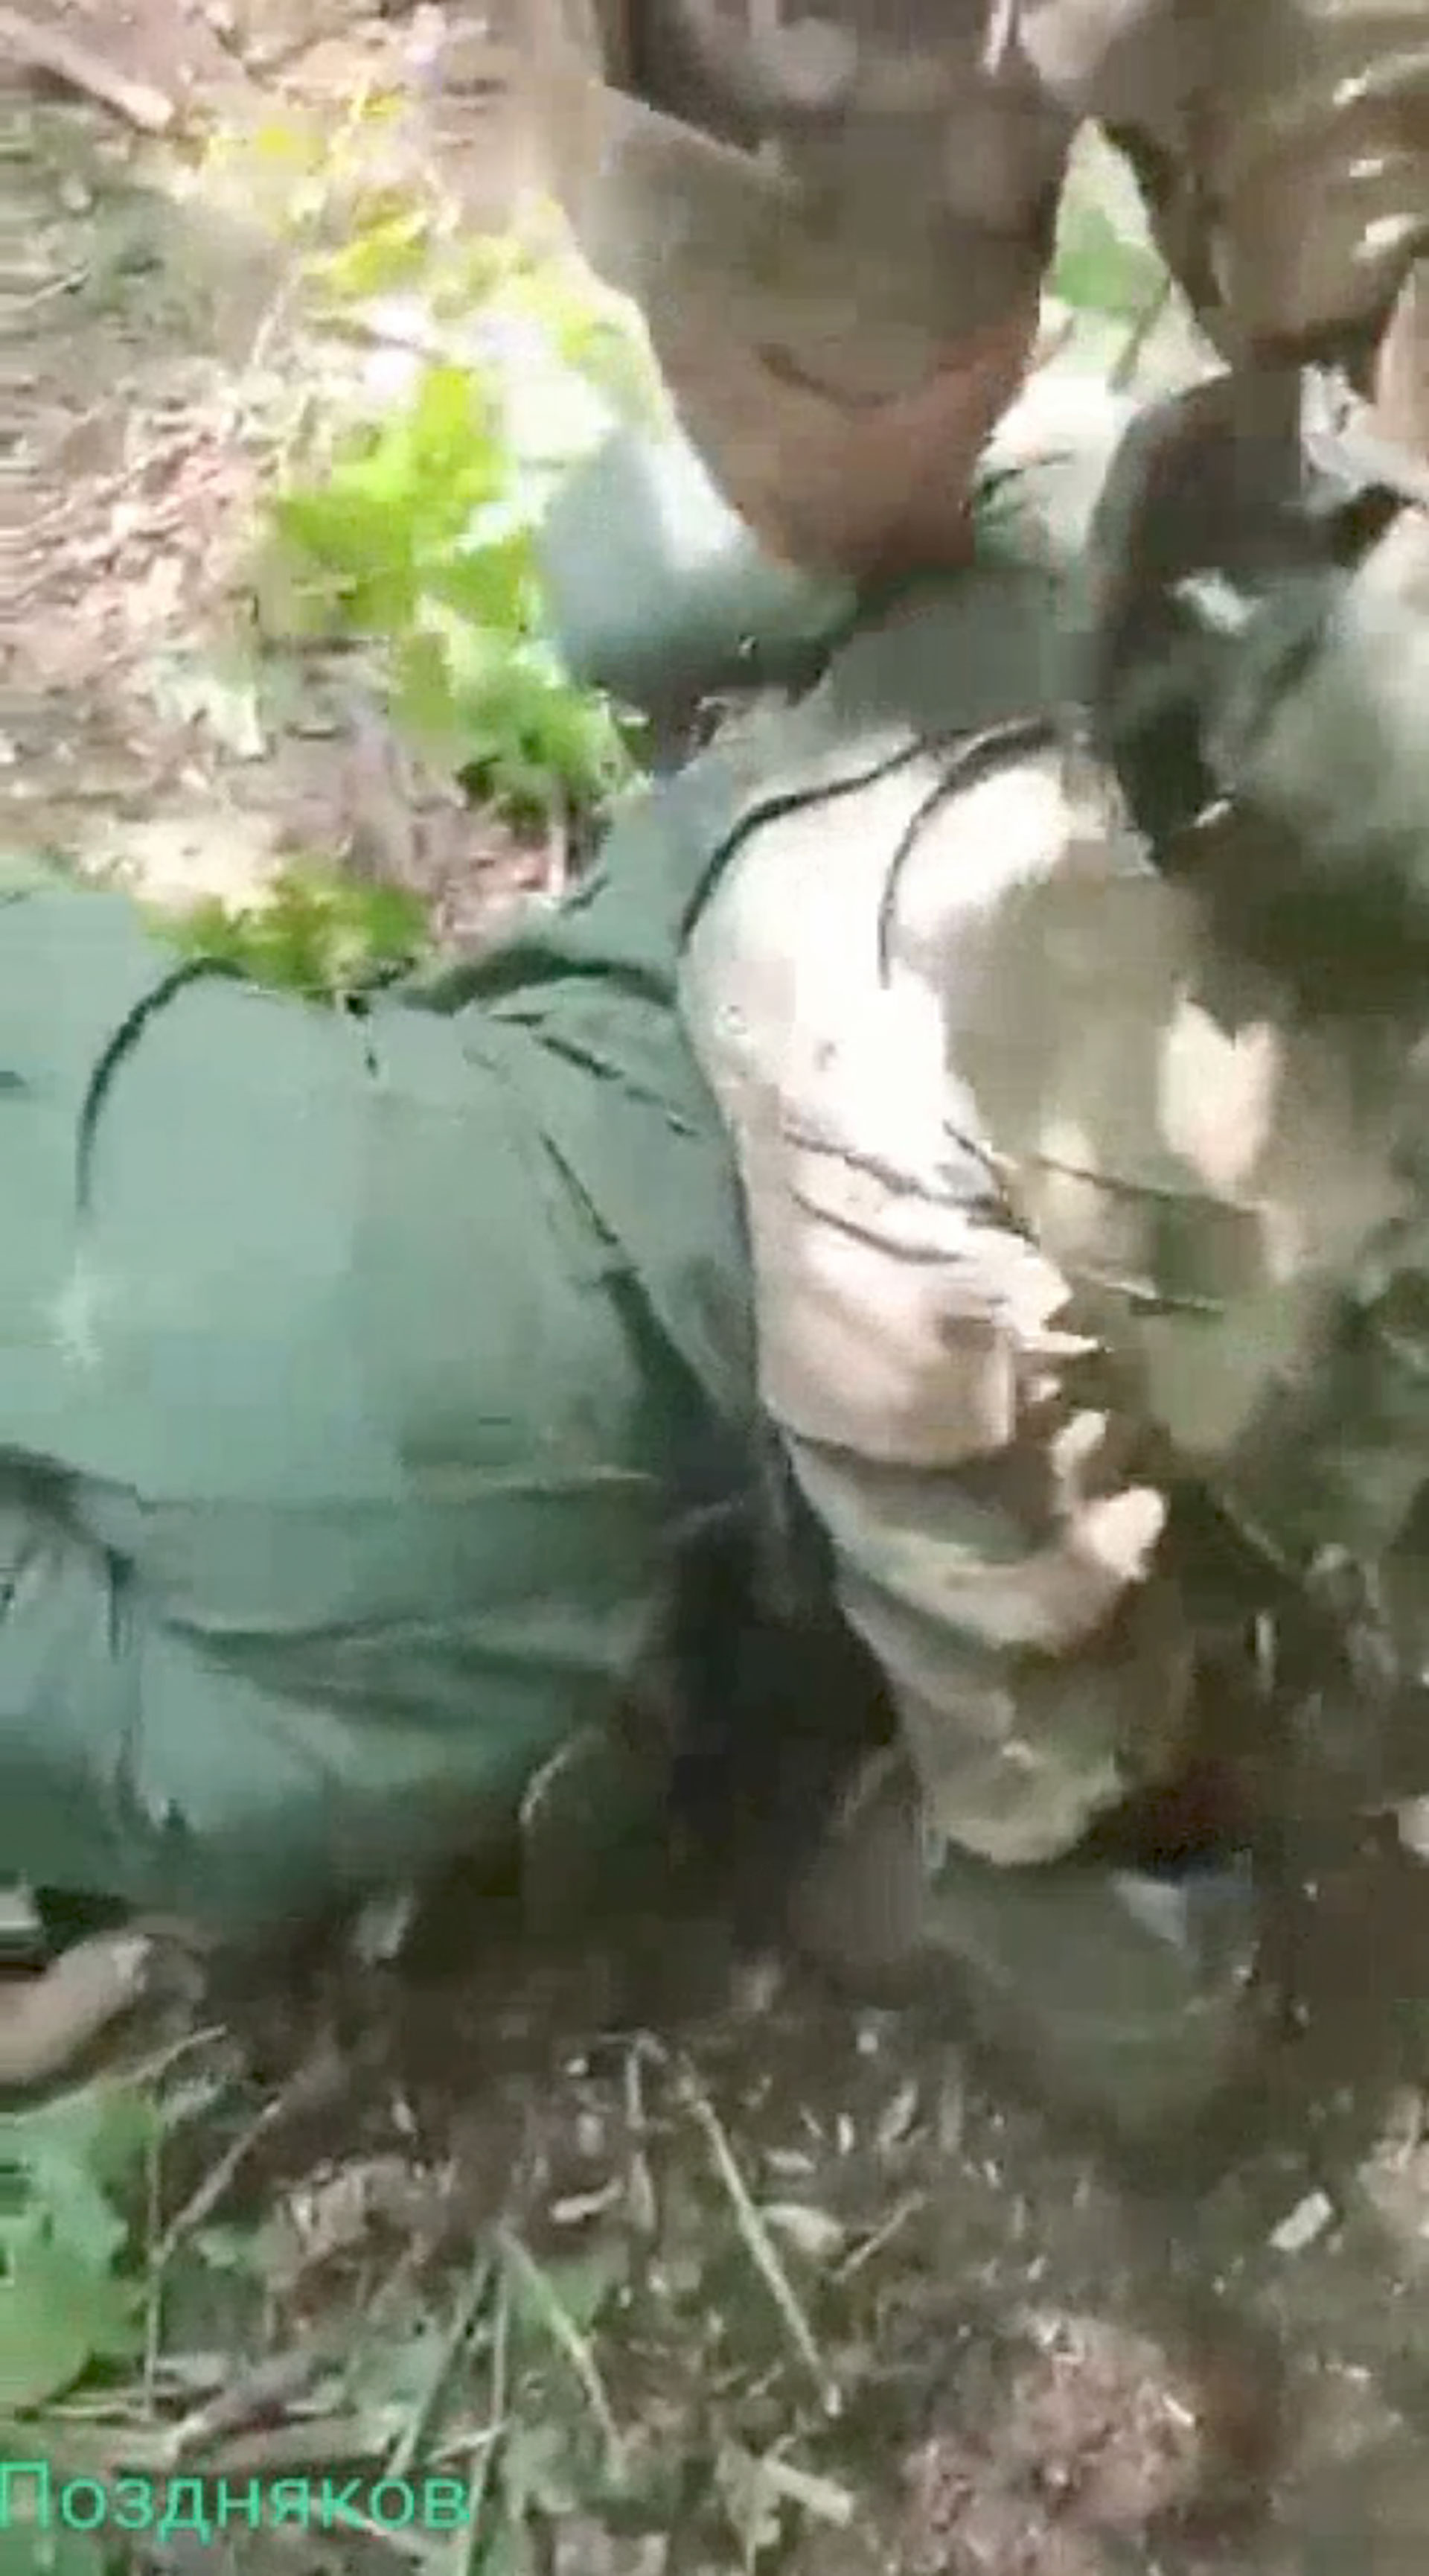 El vídeo de la decapitación circulaba en redes sociales rusas y fue descubierto por CNN